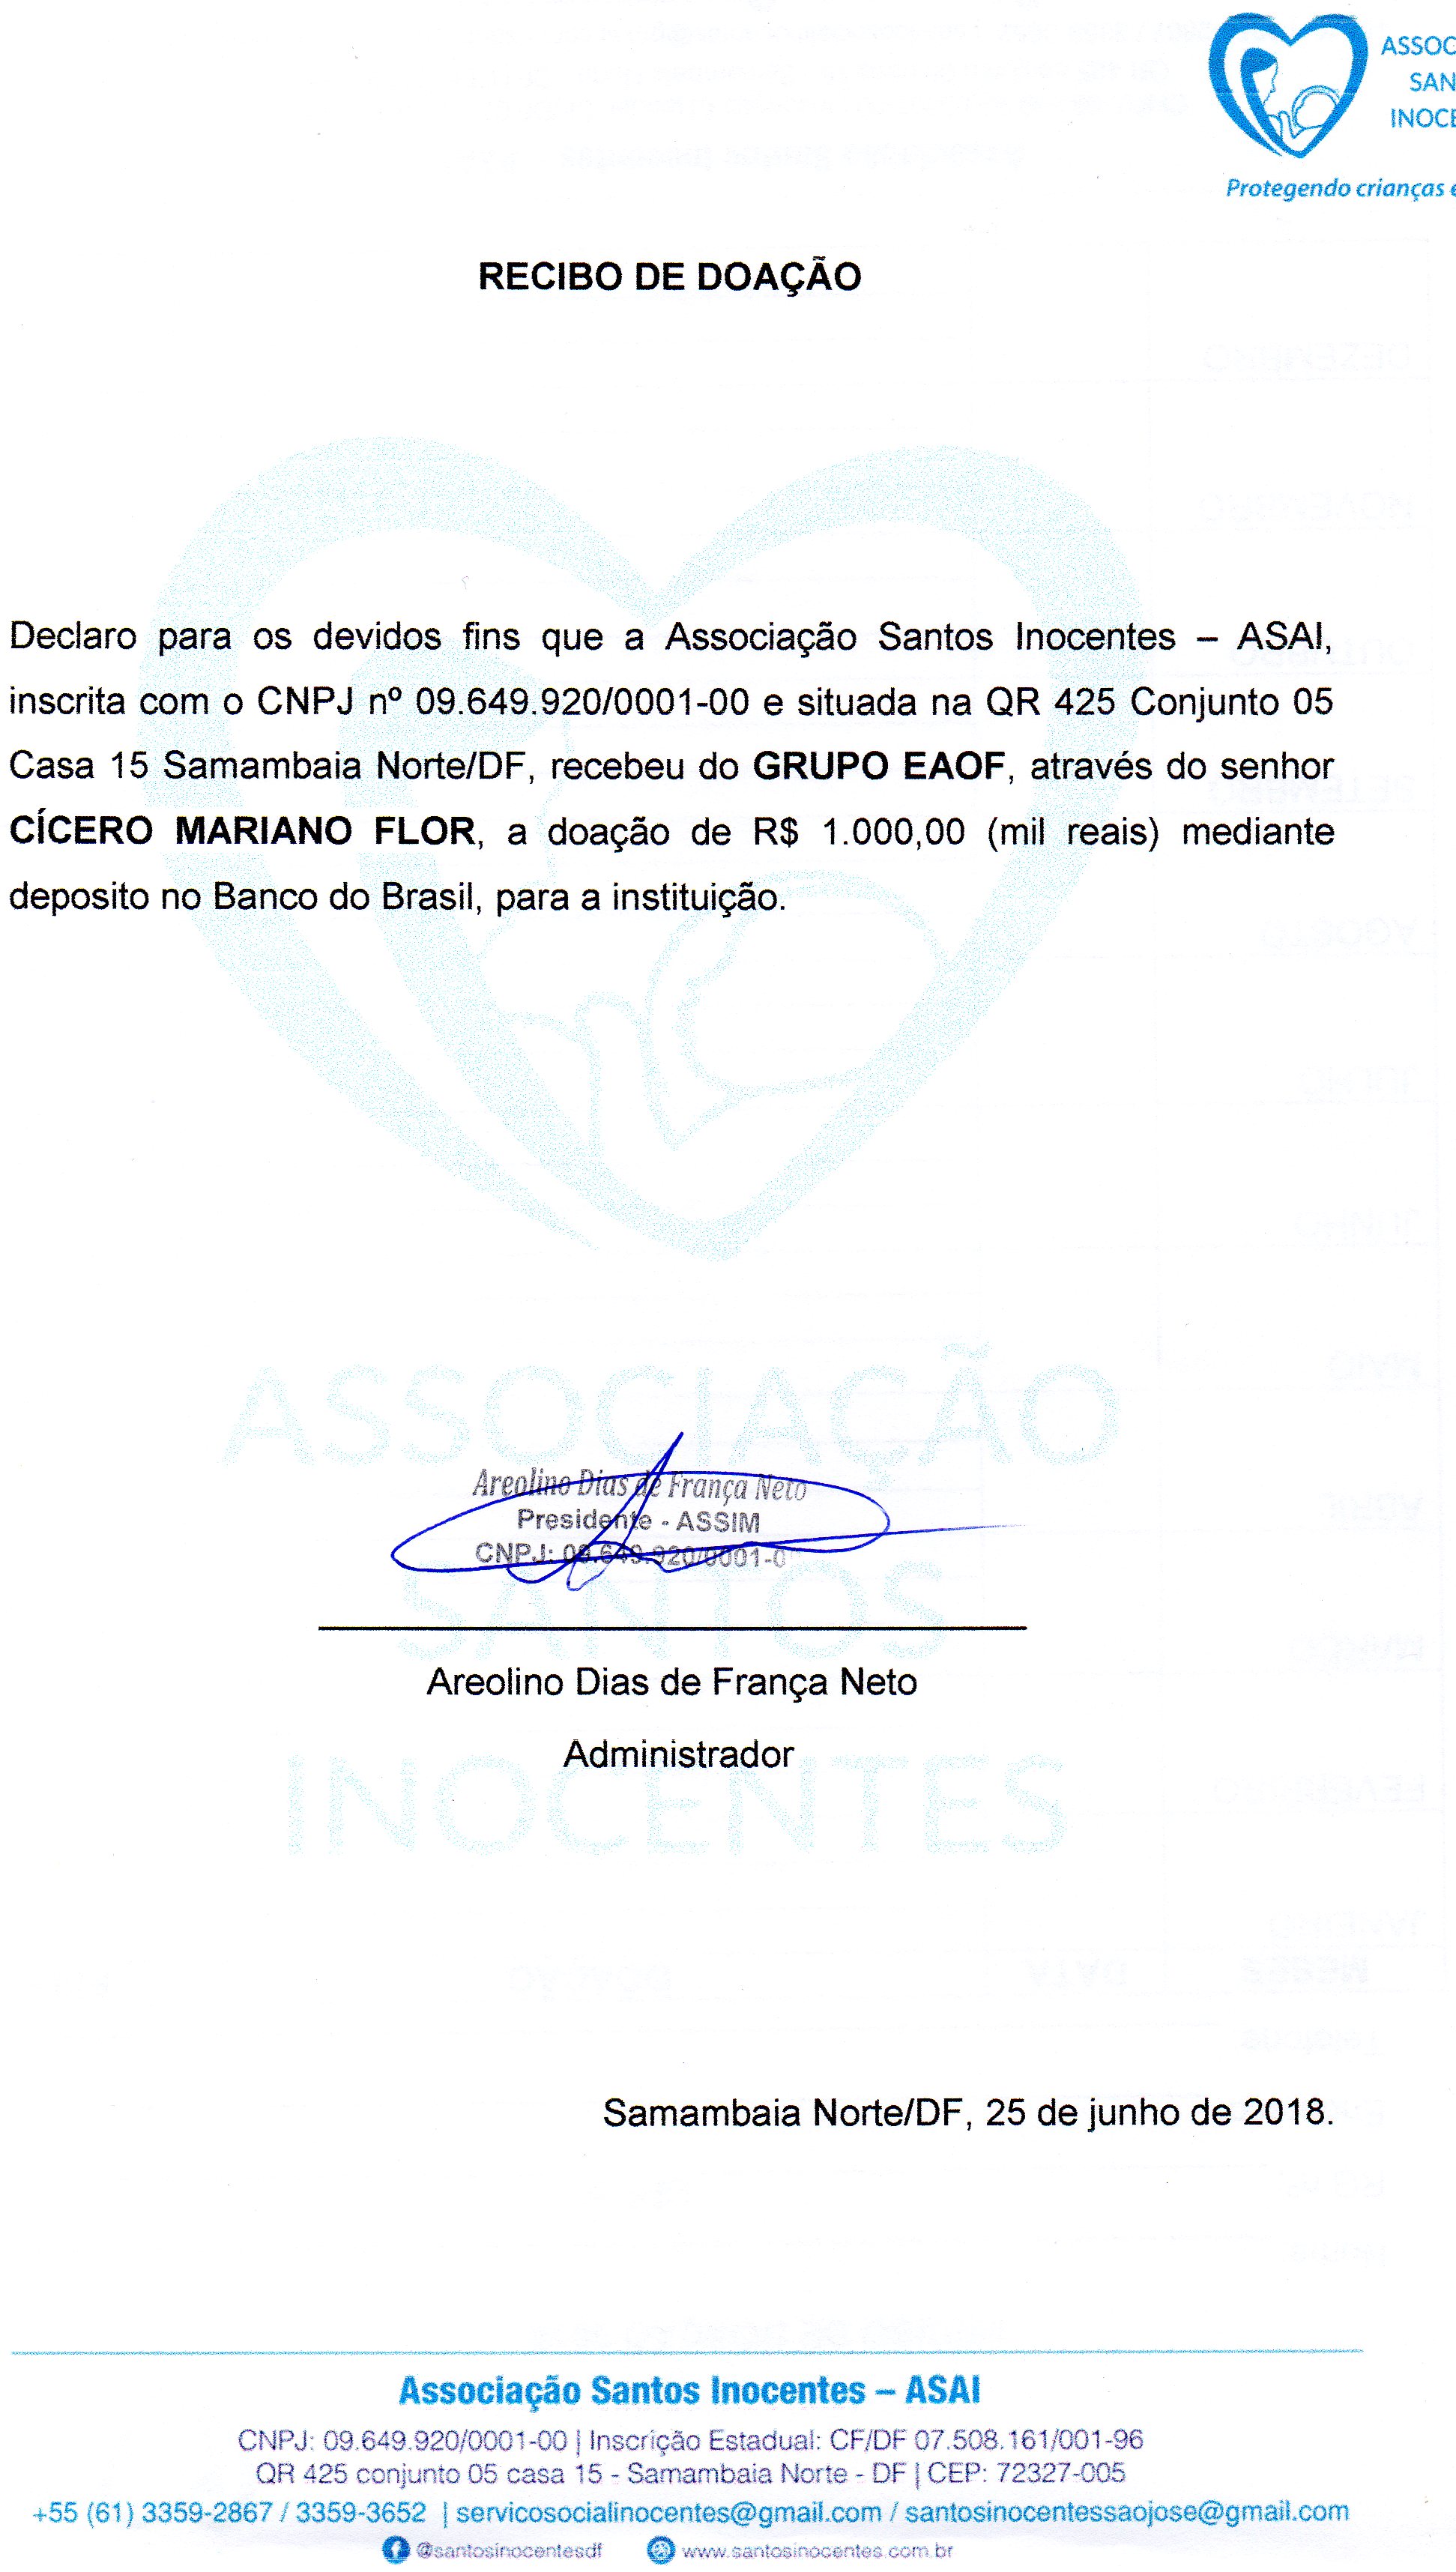 Anexo RECIBO_DOACAO_SANTOS_INOCENTES_GRUPO_AEOF_JUN2018.jpg